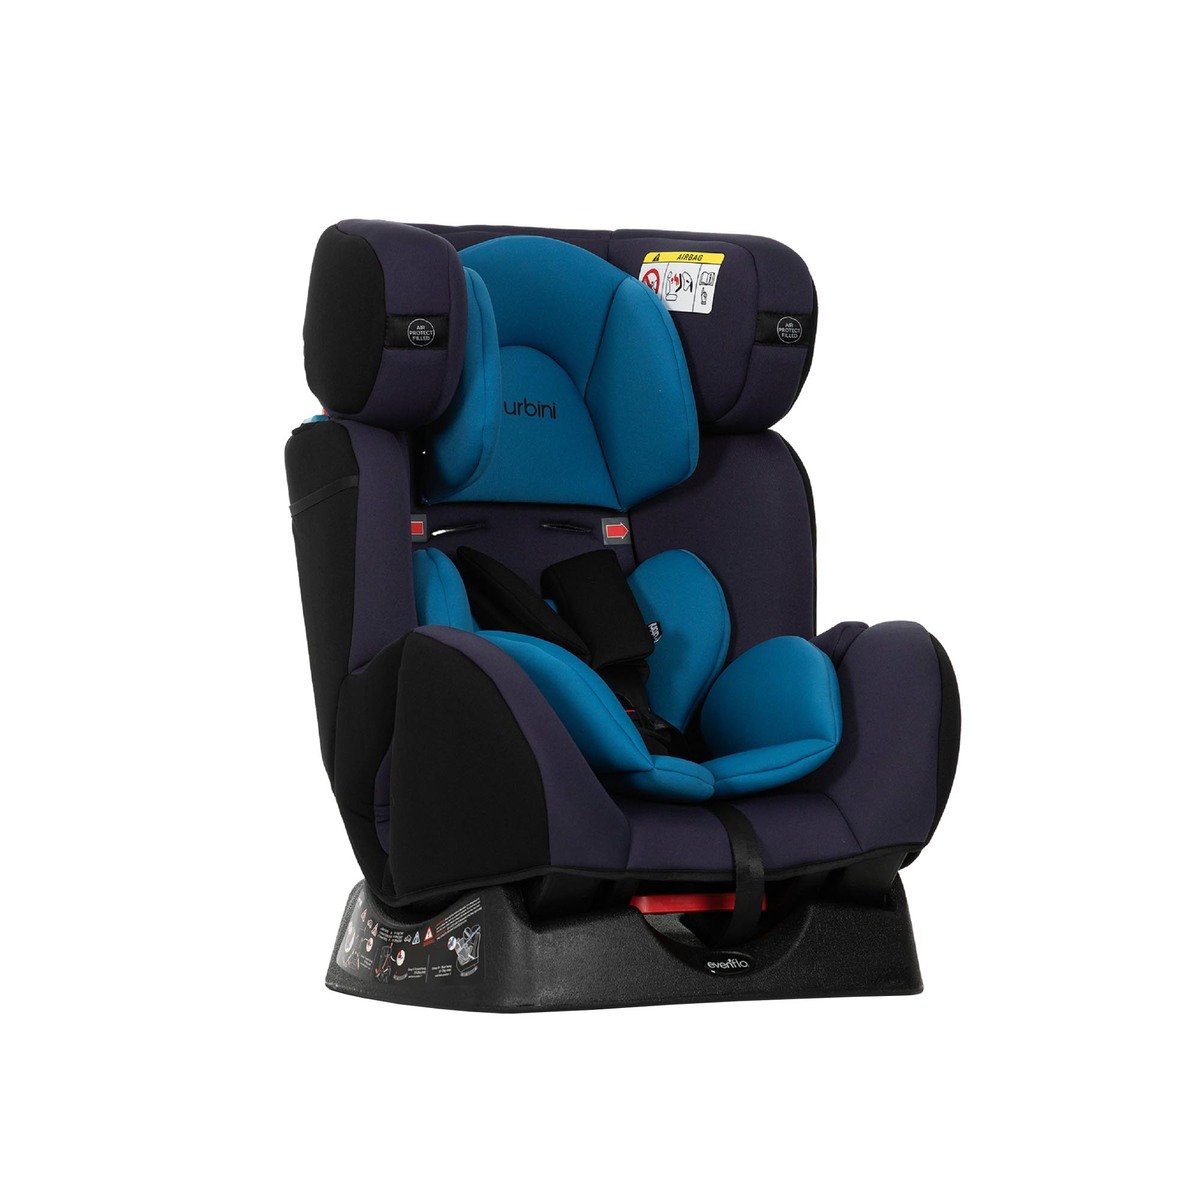 أوربيني مقعد سيارة للأطفال CS-858 أزرق